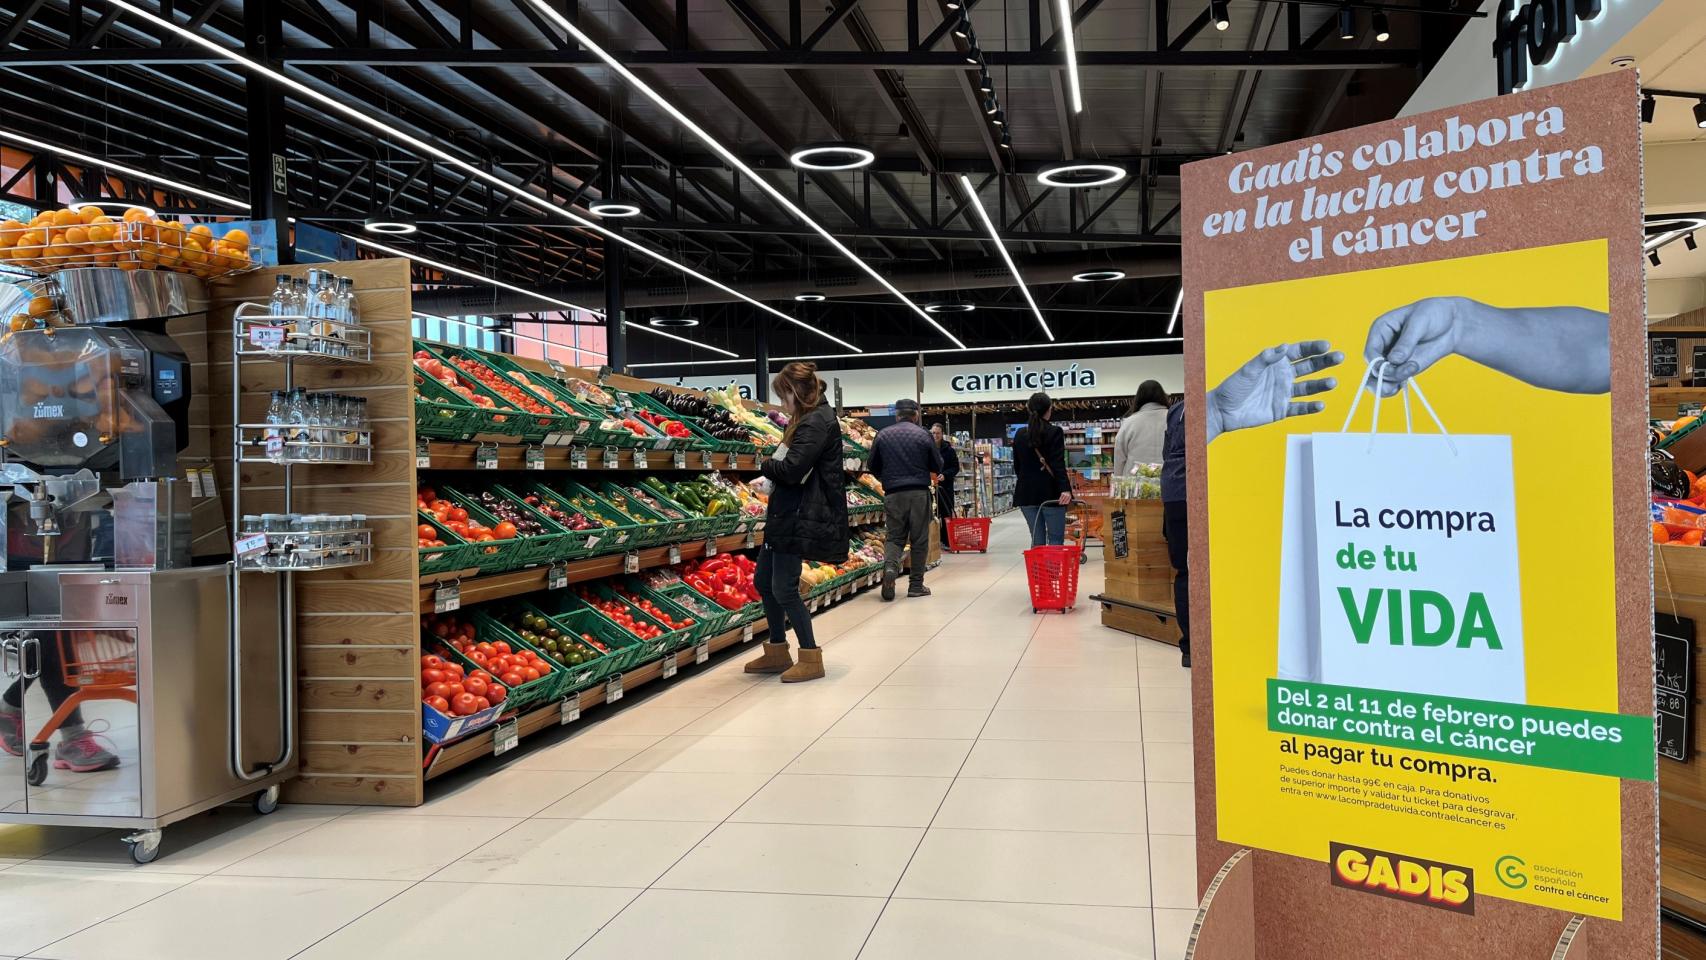 Un supermercado Gadis con la campaña contra el cáncer